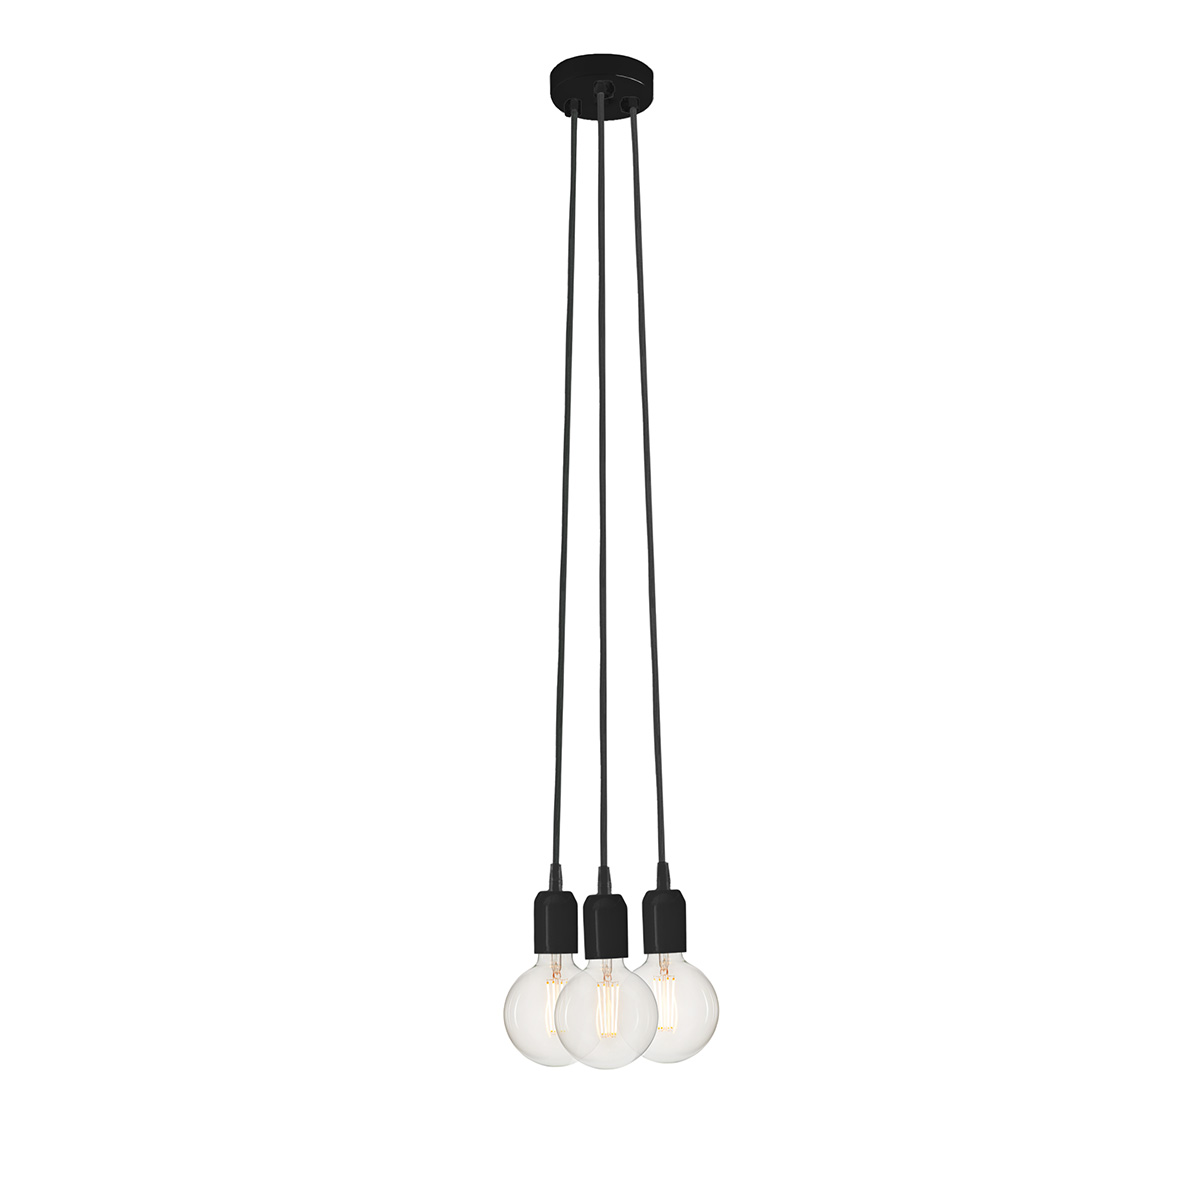 Μοντέρνο 3φωτο φωτιστικό ΚΑΛΩΔΙΑ modern 3-bulb pendant light